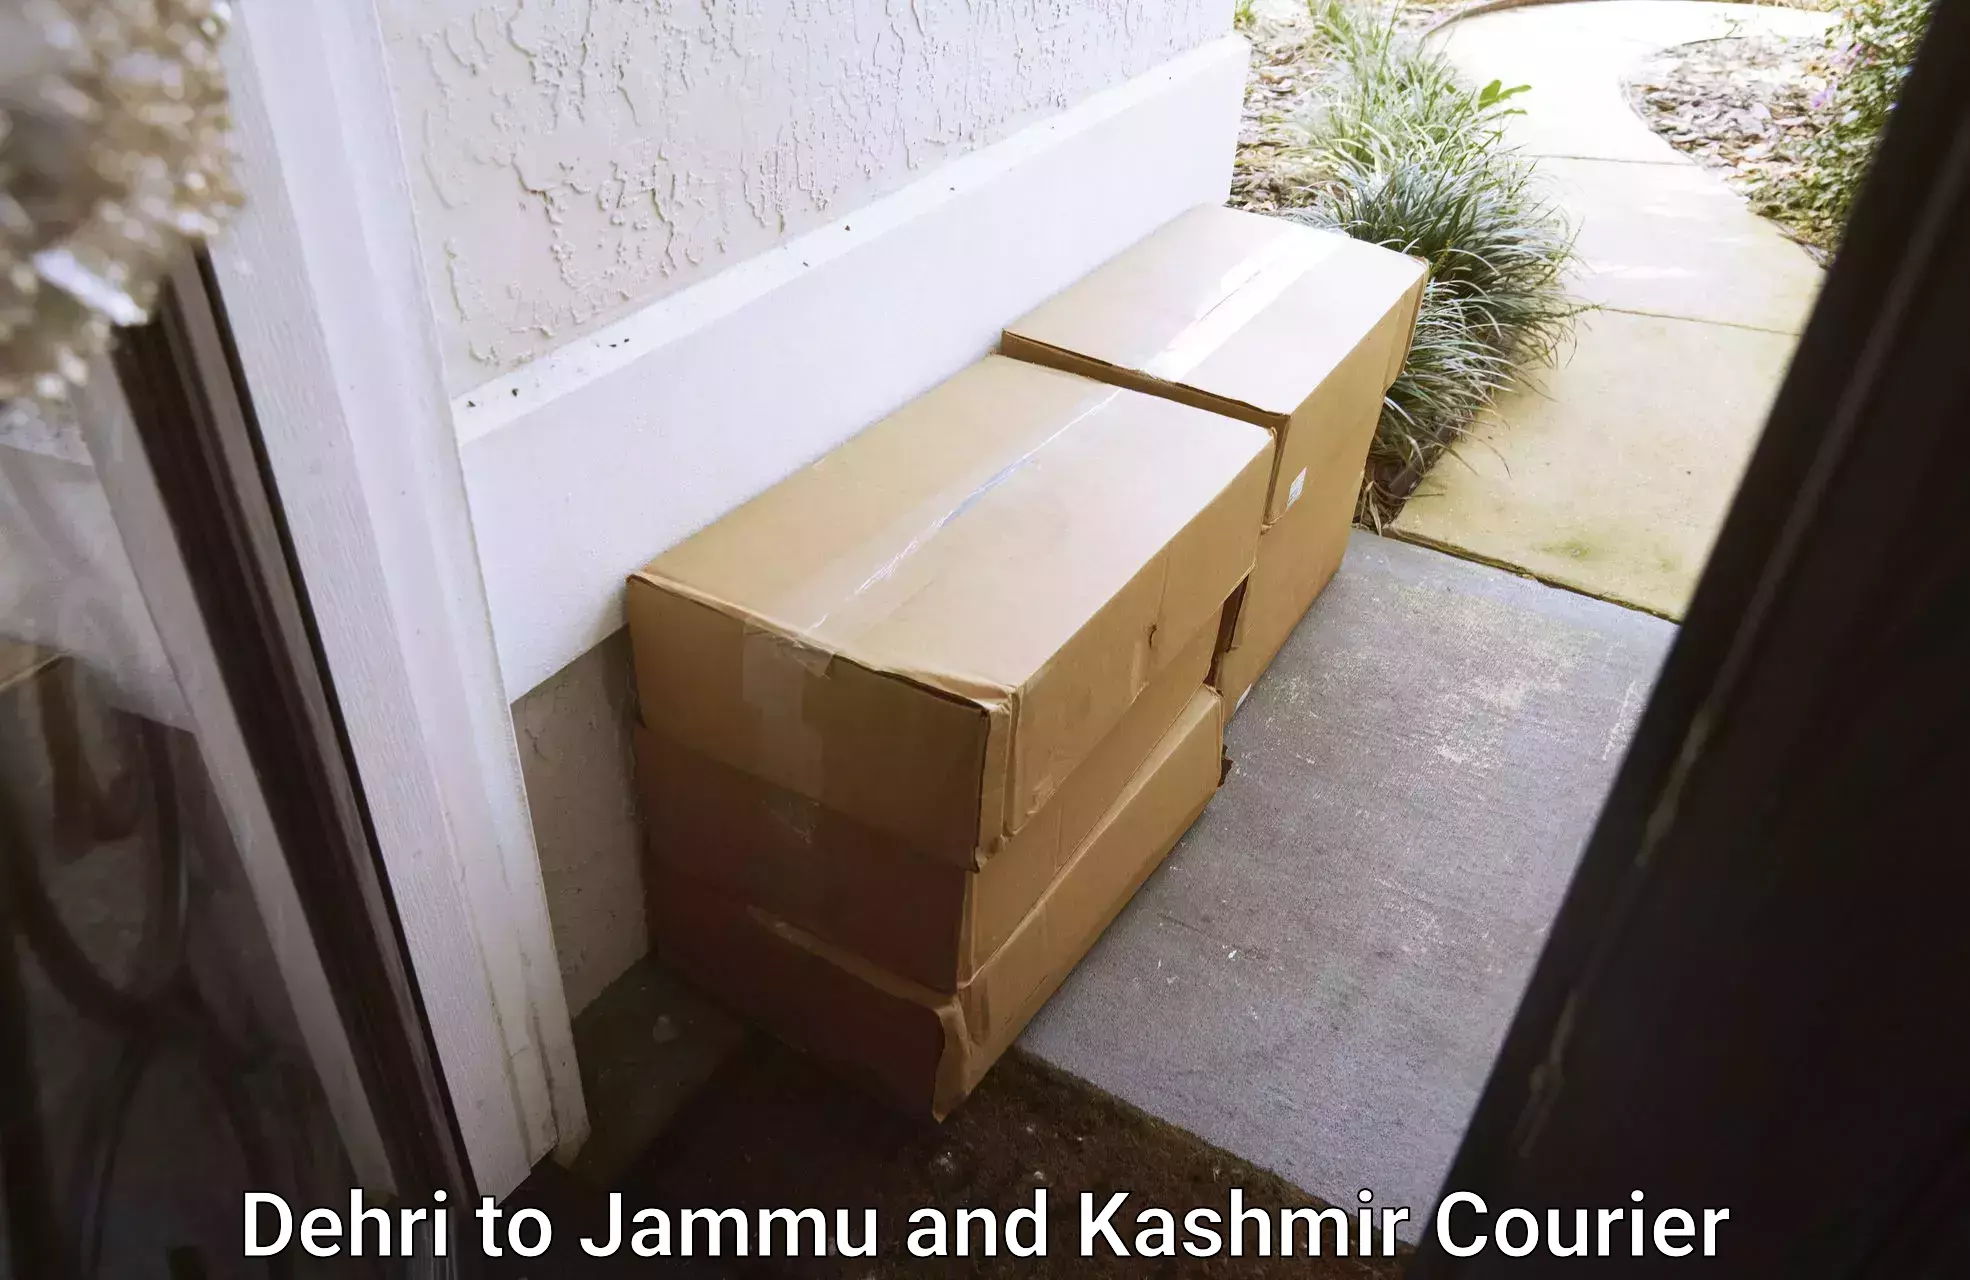 Full-service household moving in Dehri to University of Kashmir Srinagar